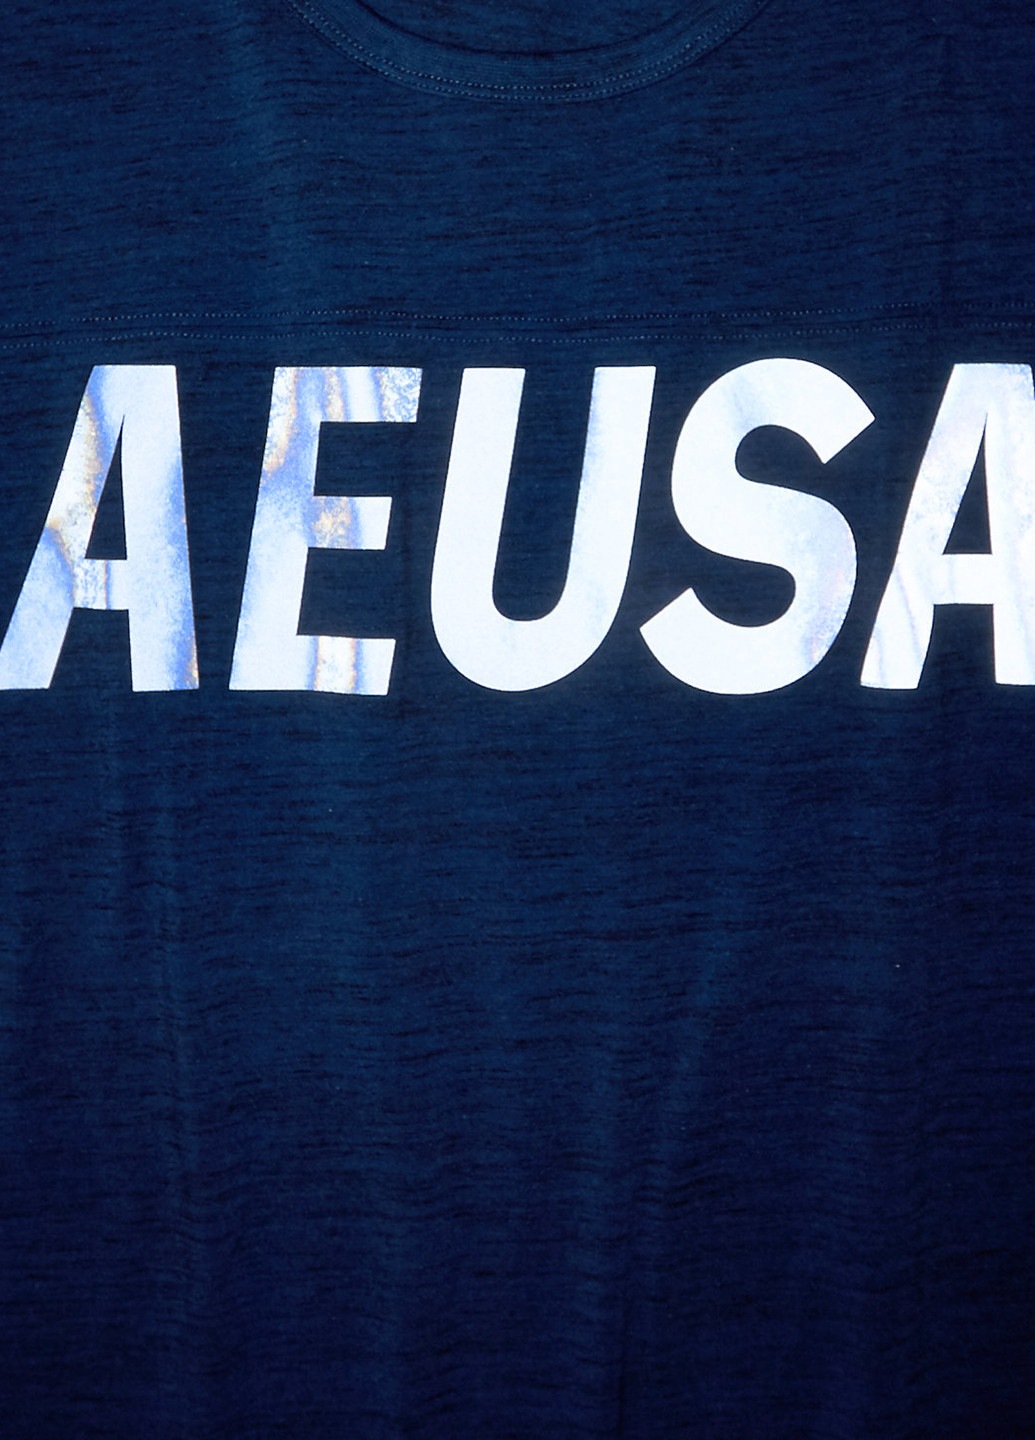 Темно-синяя футболка American Eagle